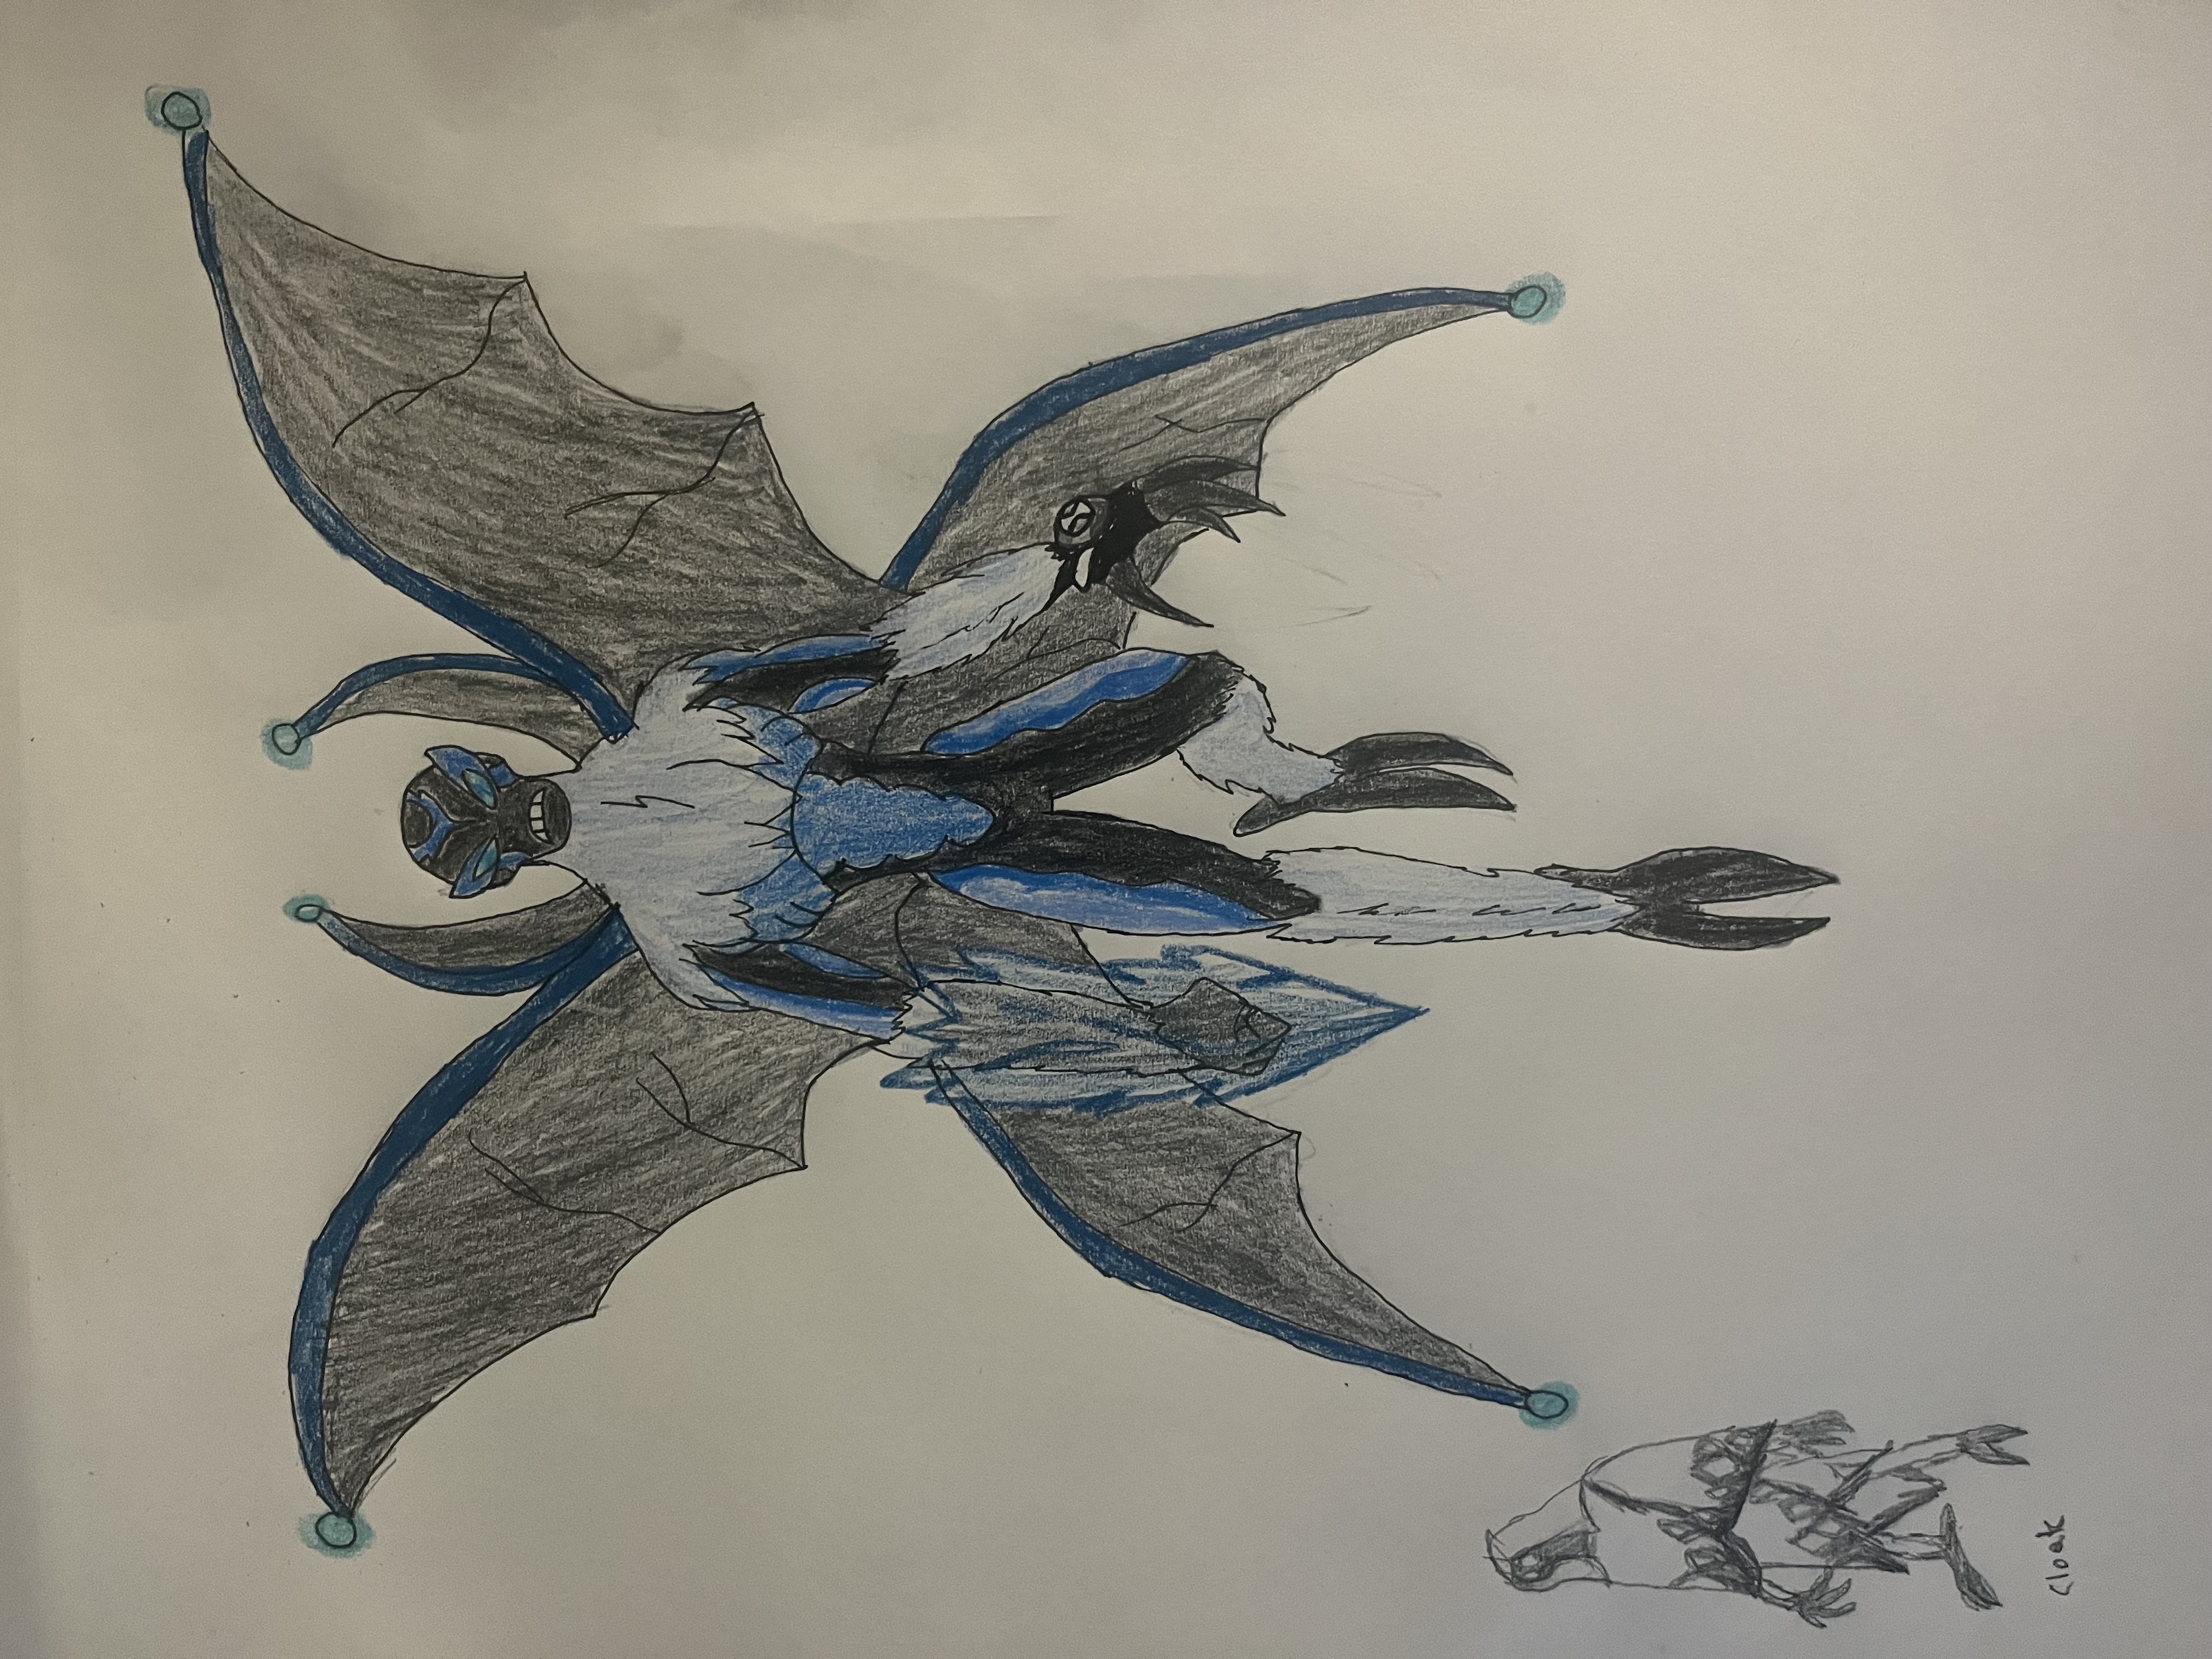 Ben 10 Alien Supremo - Jetray by Crisaurus006 on DeviantArt